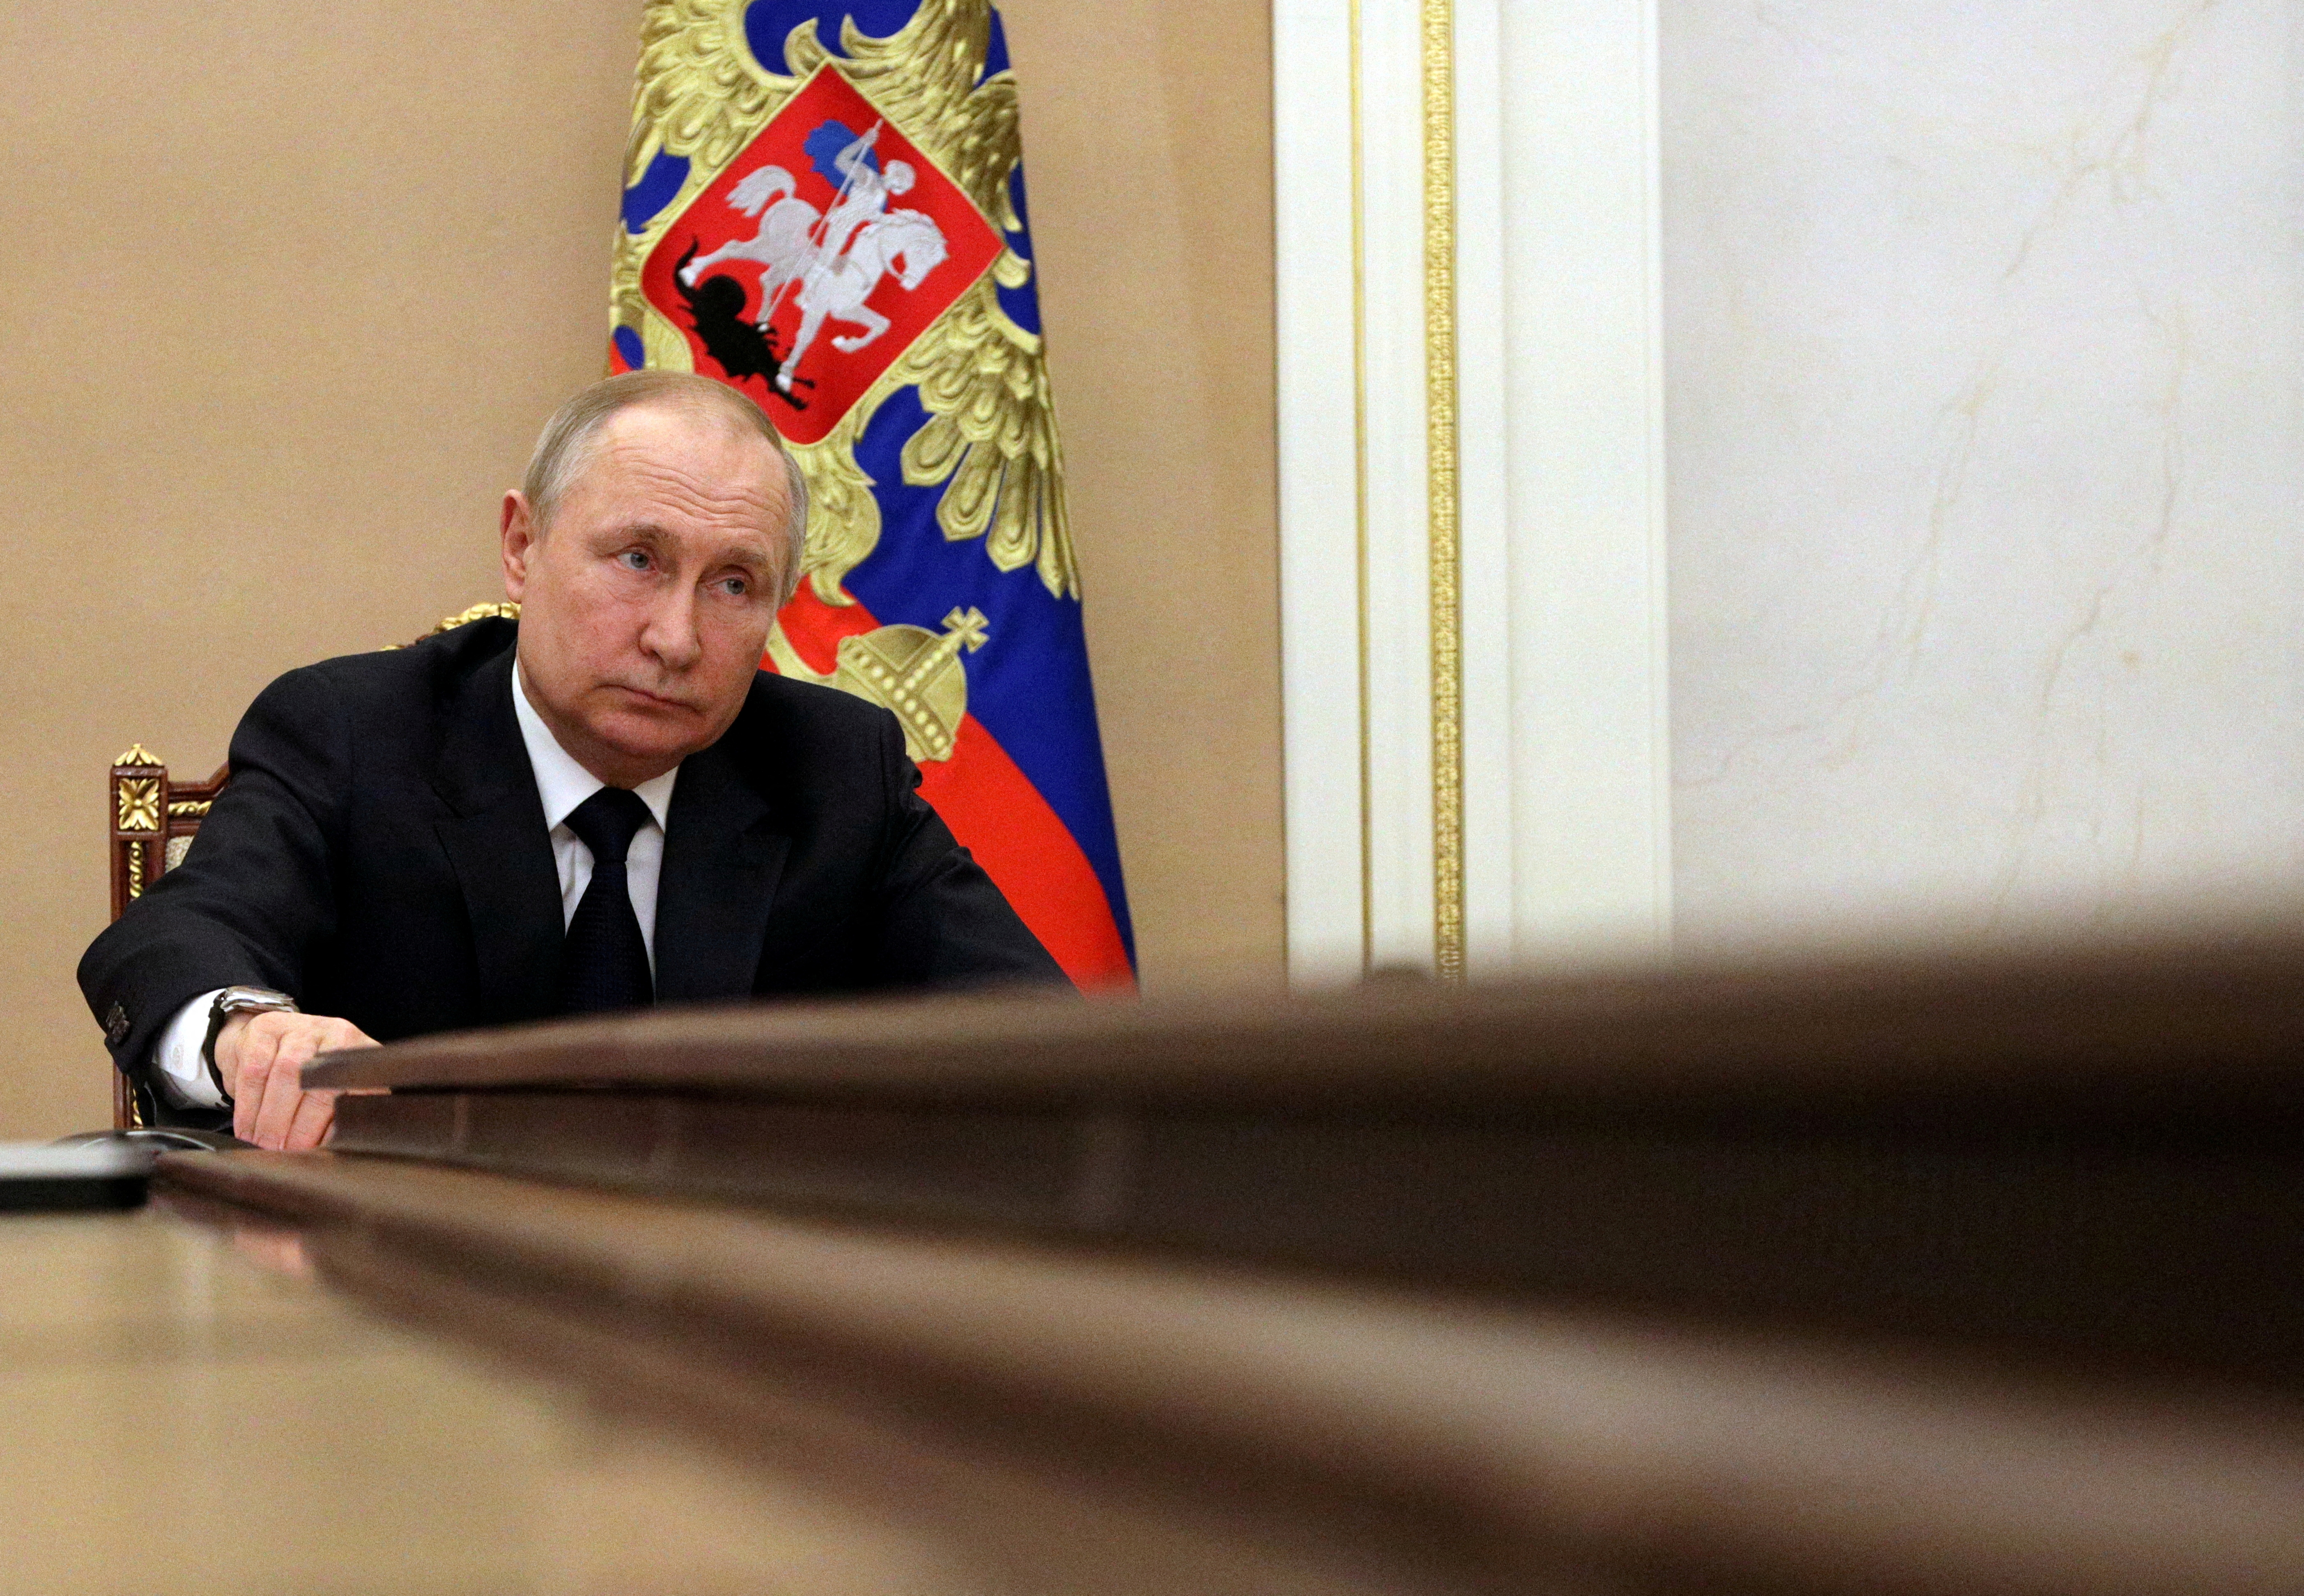 Salaires des fonctionnaires, soutien du rouble, retraites...Vladimir Poutine présente sa contre-attaque face aux sanctions